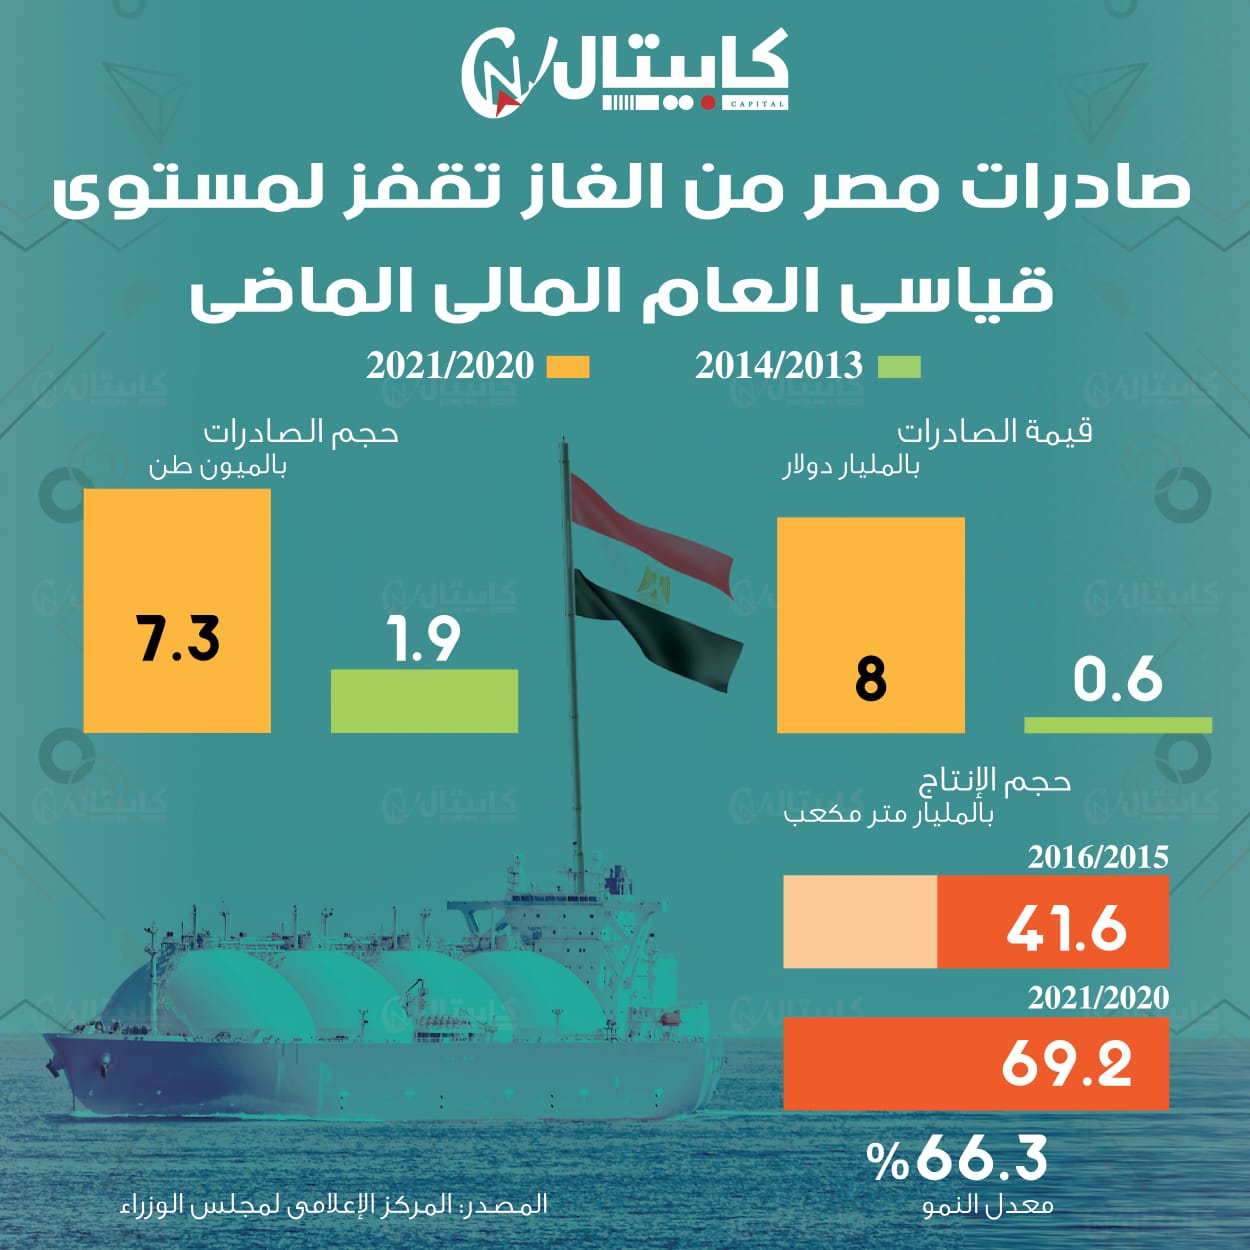 صادرات مصر من الغاز تقفز لمستوى قياسي العام المالي الماضي